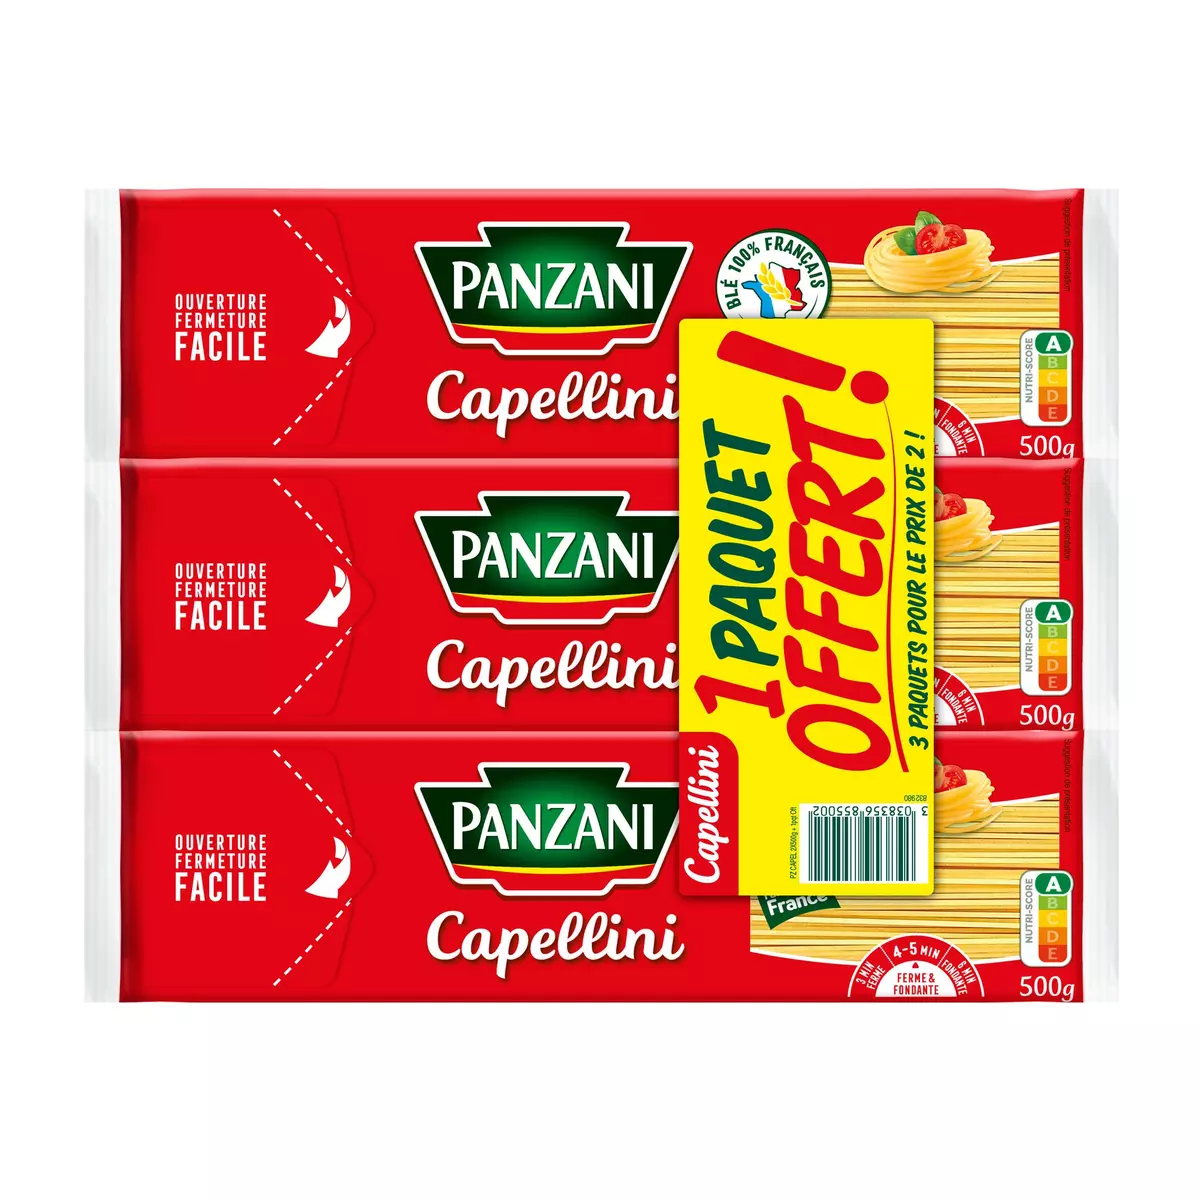 PANZANI Capellini 2x500g +500g offert